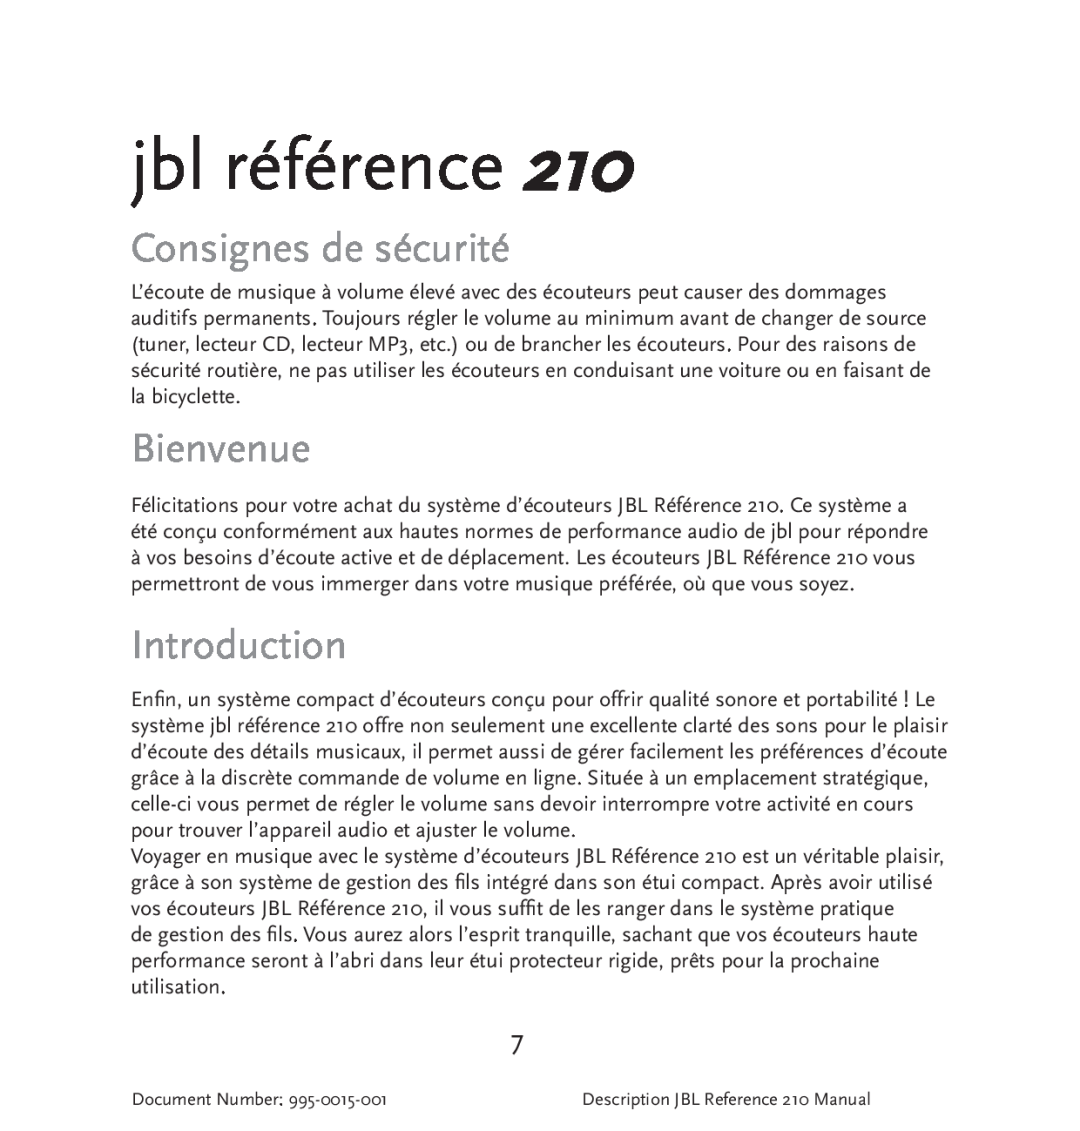 JBL 210 manual Consignes de sécurité, Bienvenue, jbl référence, Introduction 